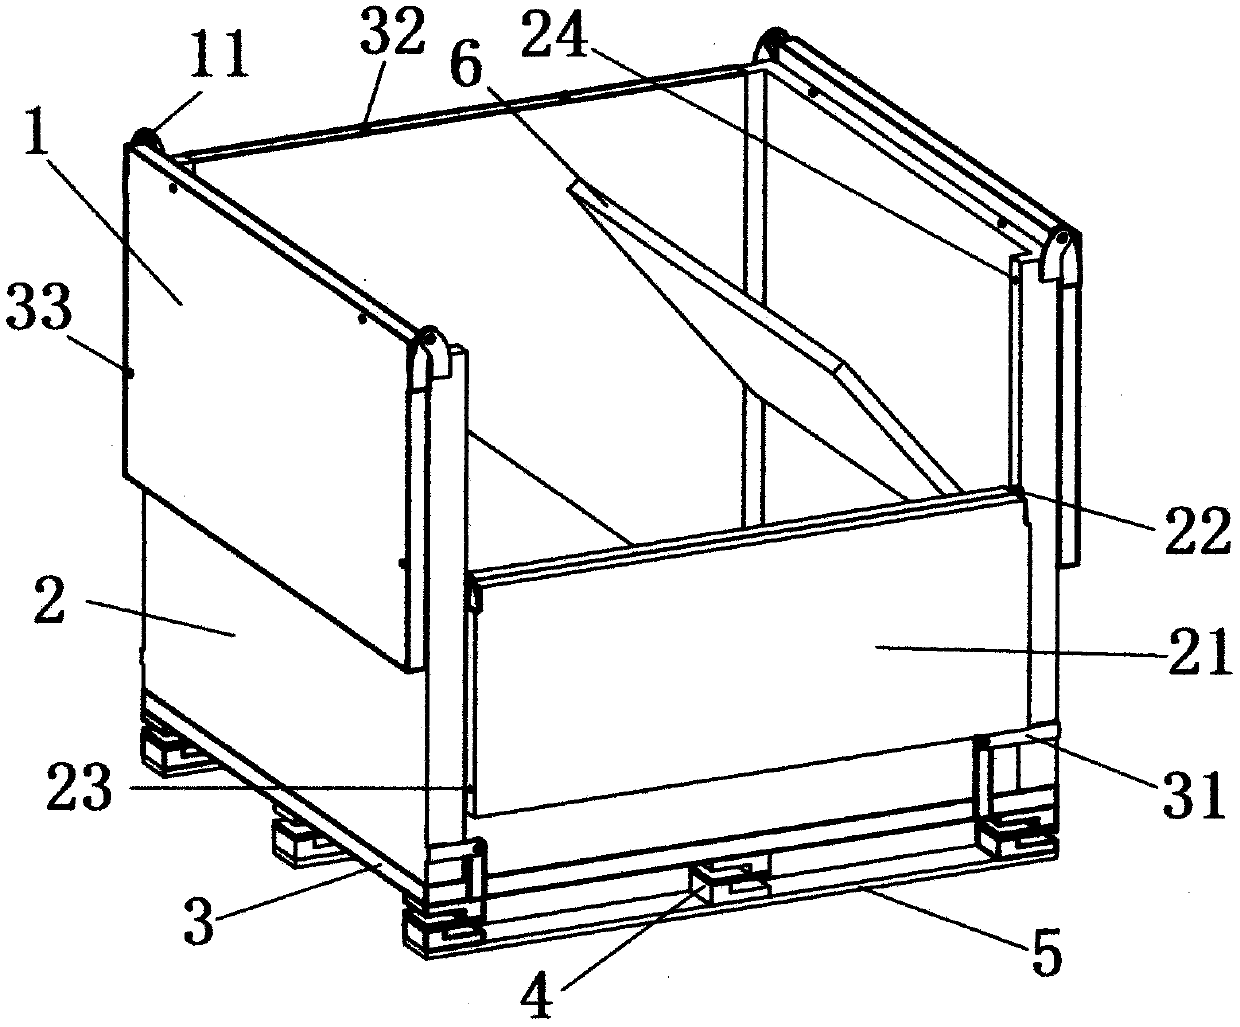 Foldable buffer packing box